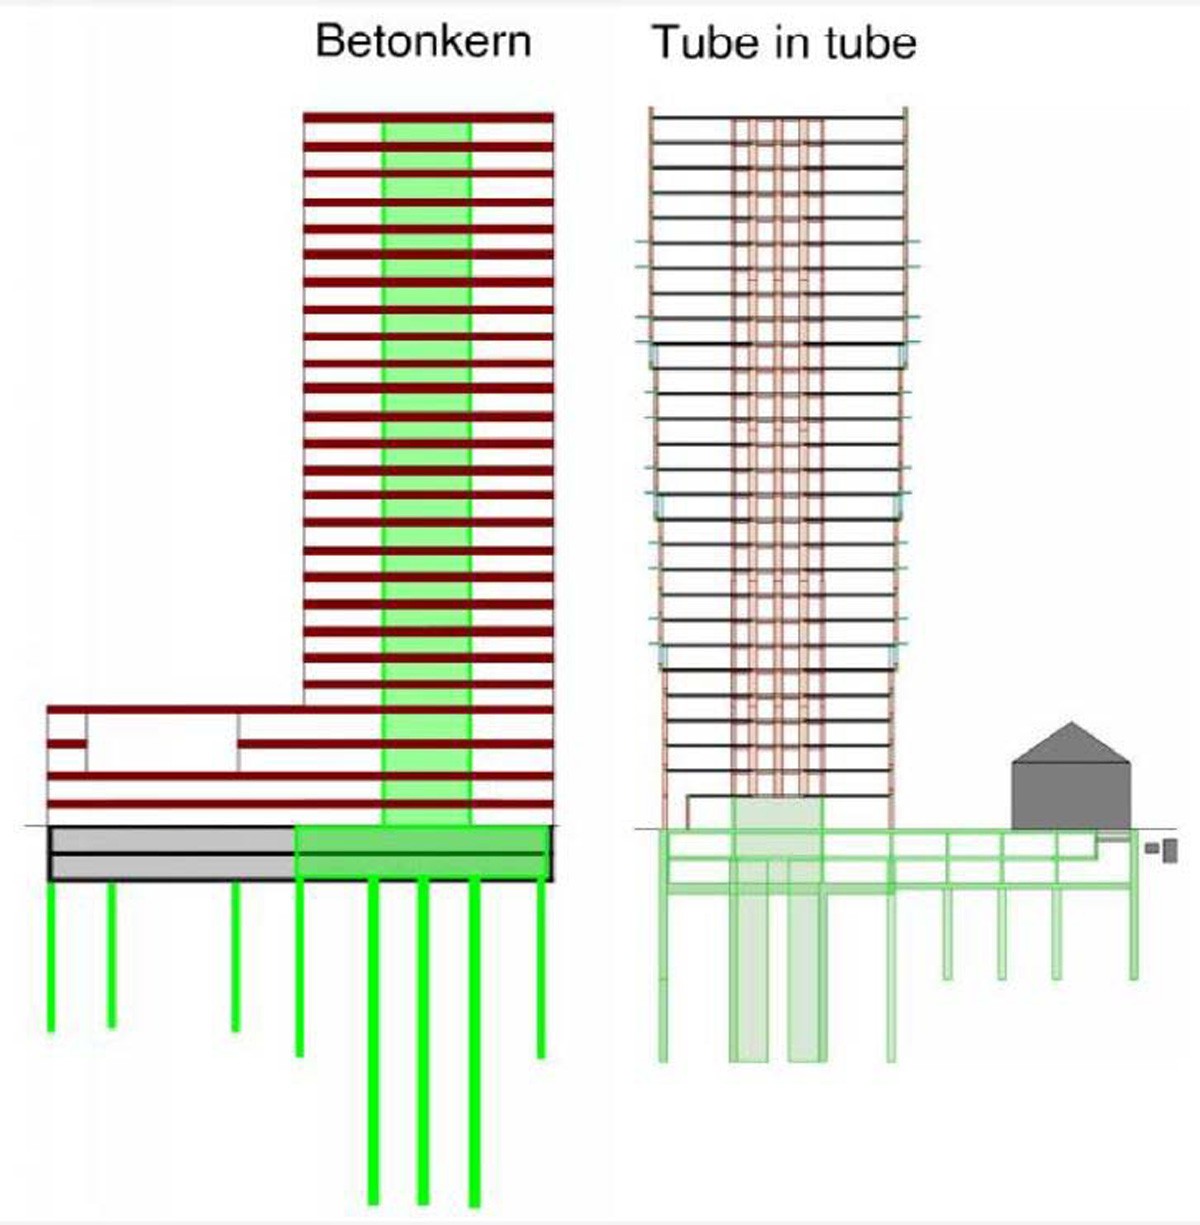 Betonkern tube in tube